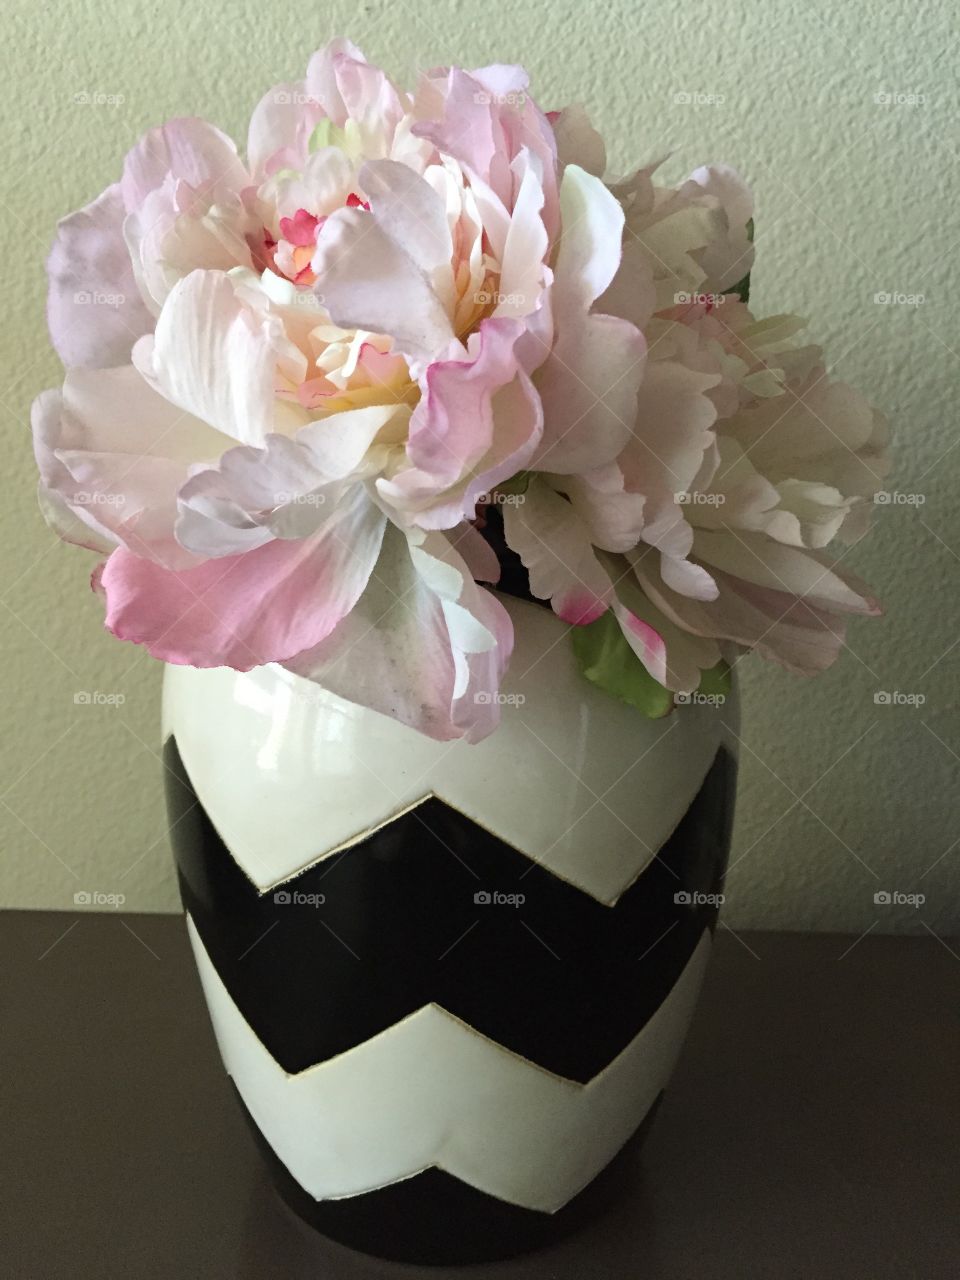 Chevron And Flowers . Chevron flowers vase 